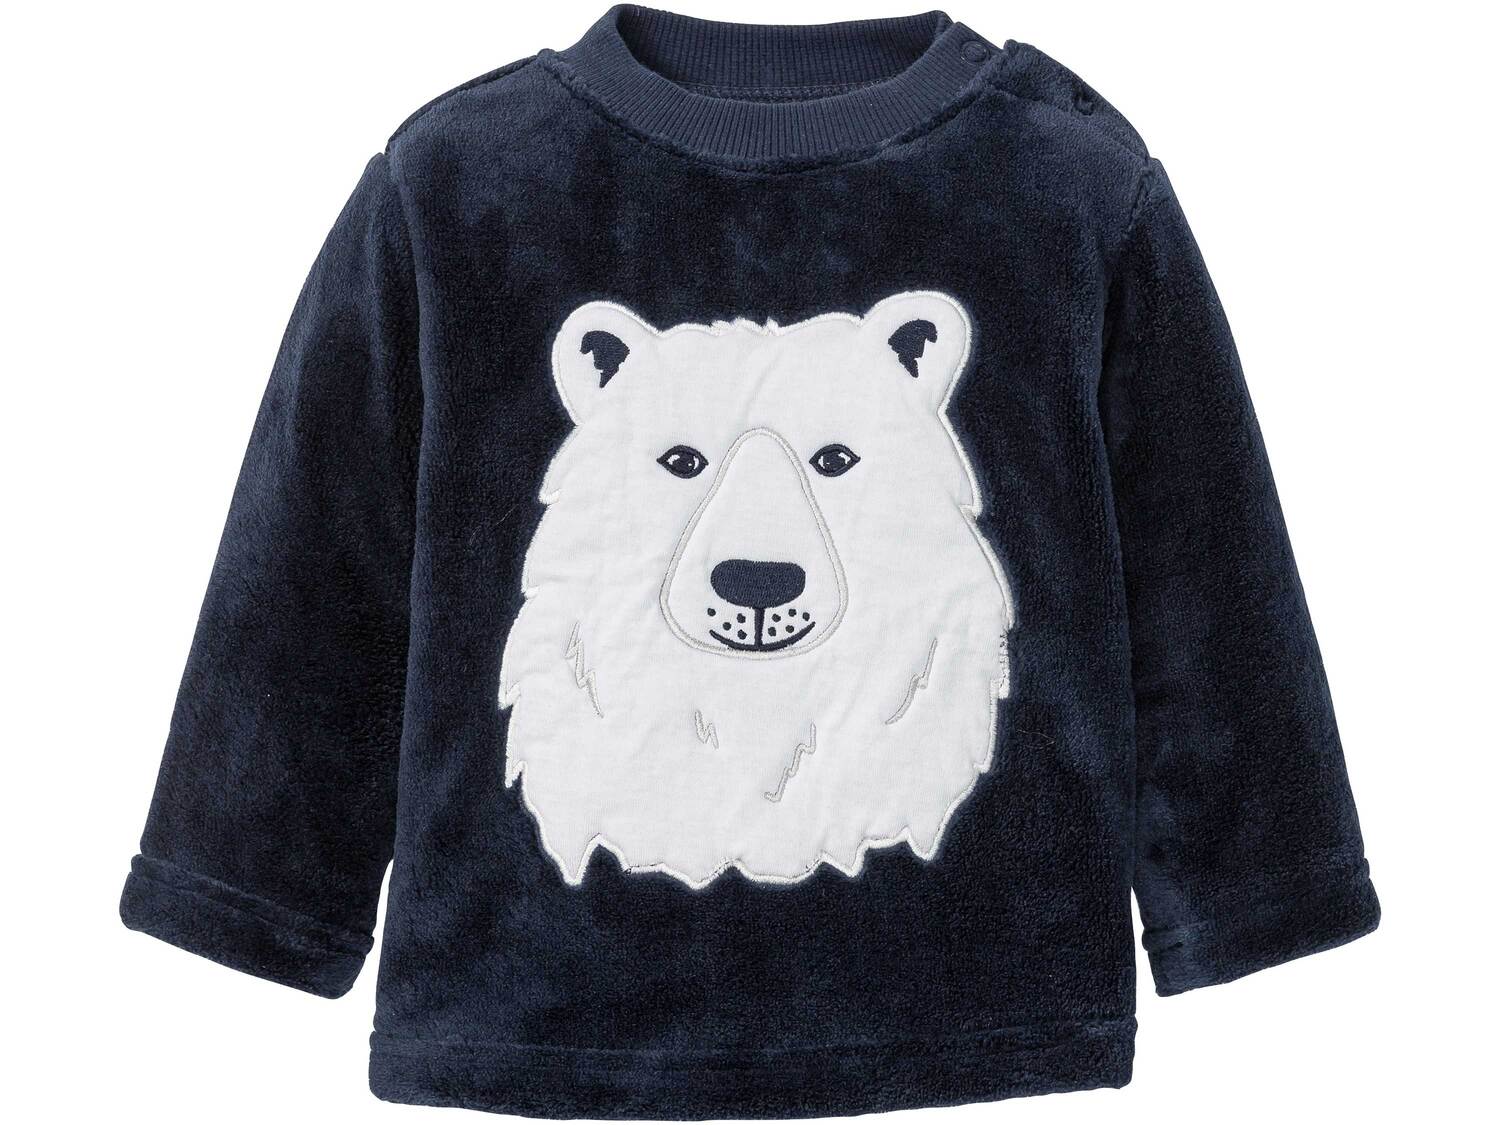 Bluza polarowa Lupilu, cena 22,99 PLN 
- rozmiary: 74-92
- z miękkiego, przytulnego ...